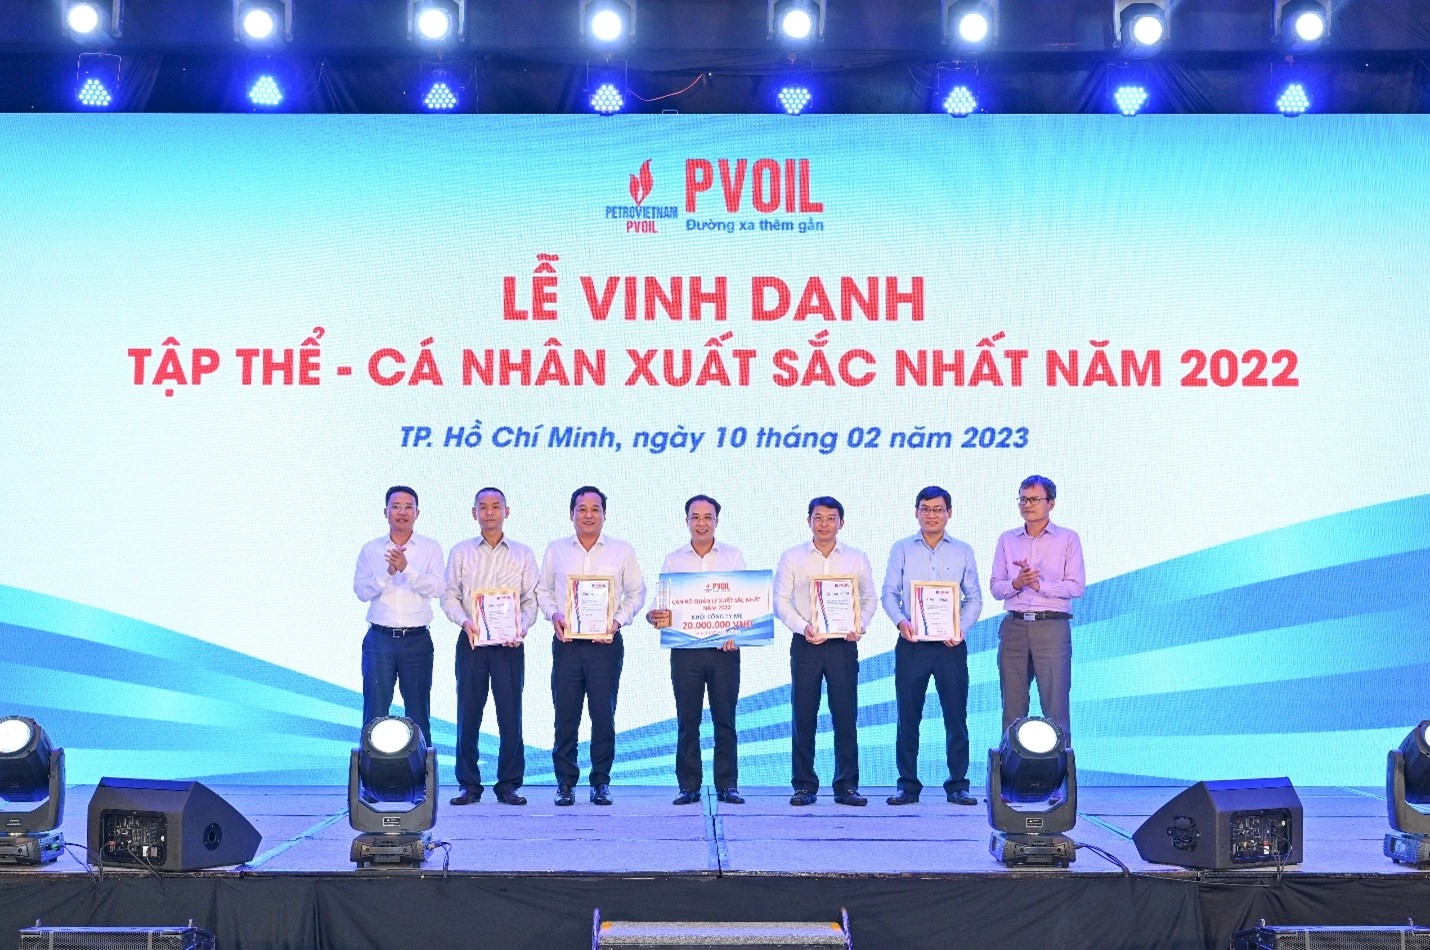 Lãnh đạo PVOIL trao danh hiệu “Cán bộ quản lý xuất sắc nhất năm 2022” (khối Công ty mẹ)